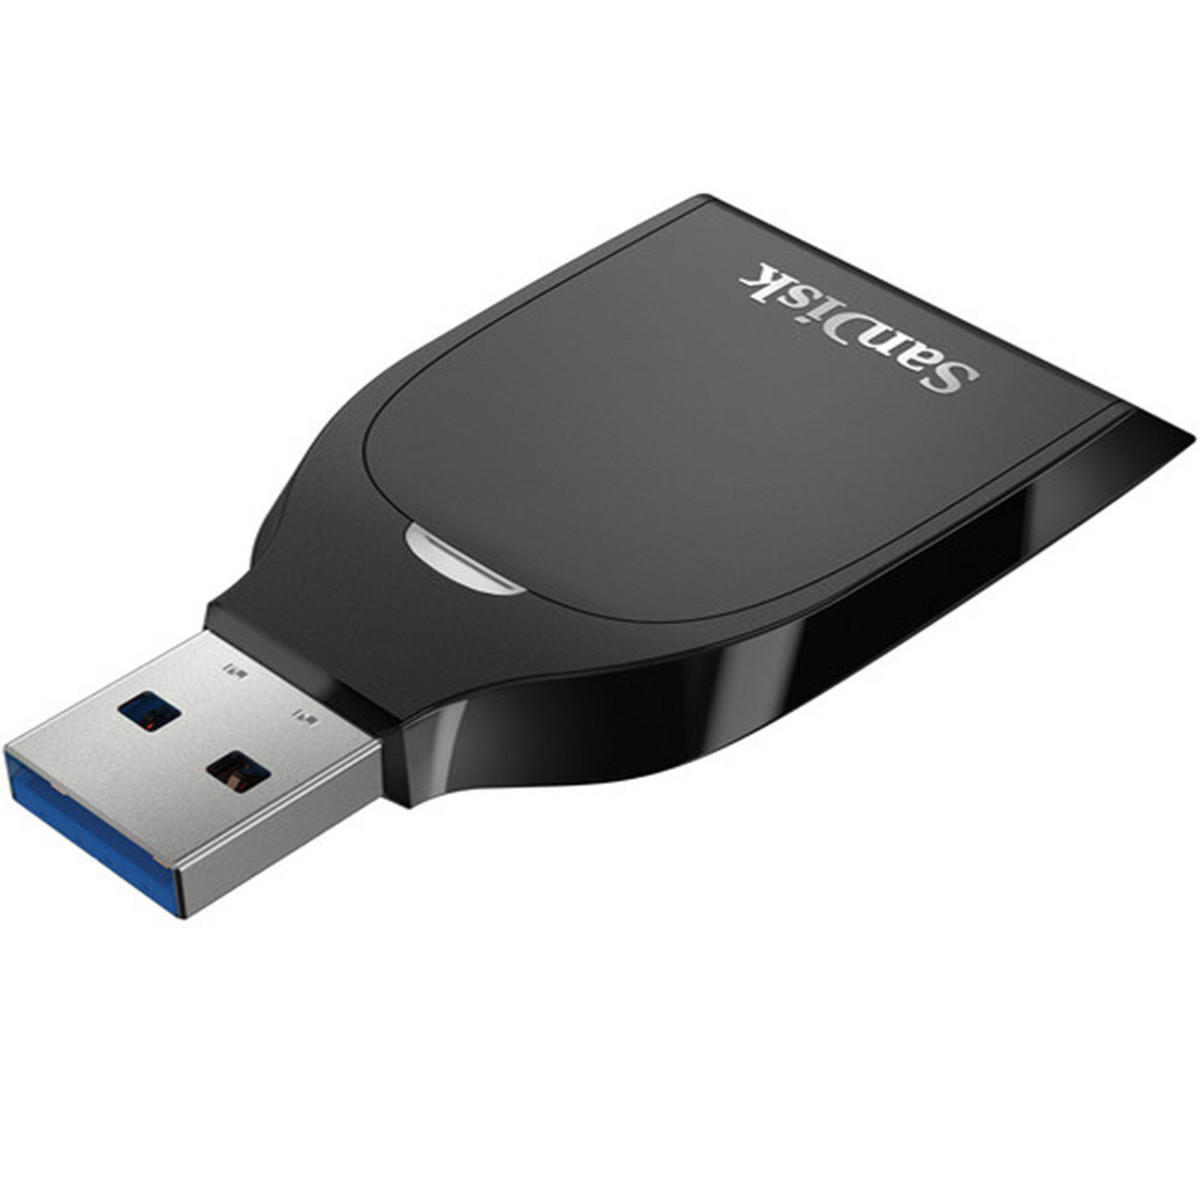 Sandisk Lecteur de cartes USB 3.0 pour cartes SD UHS-I, Noir